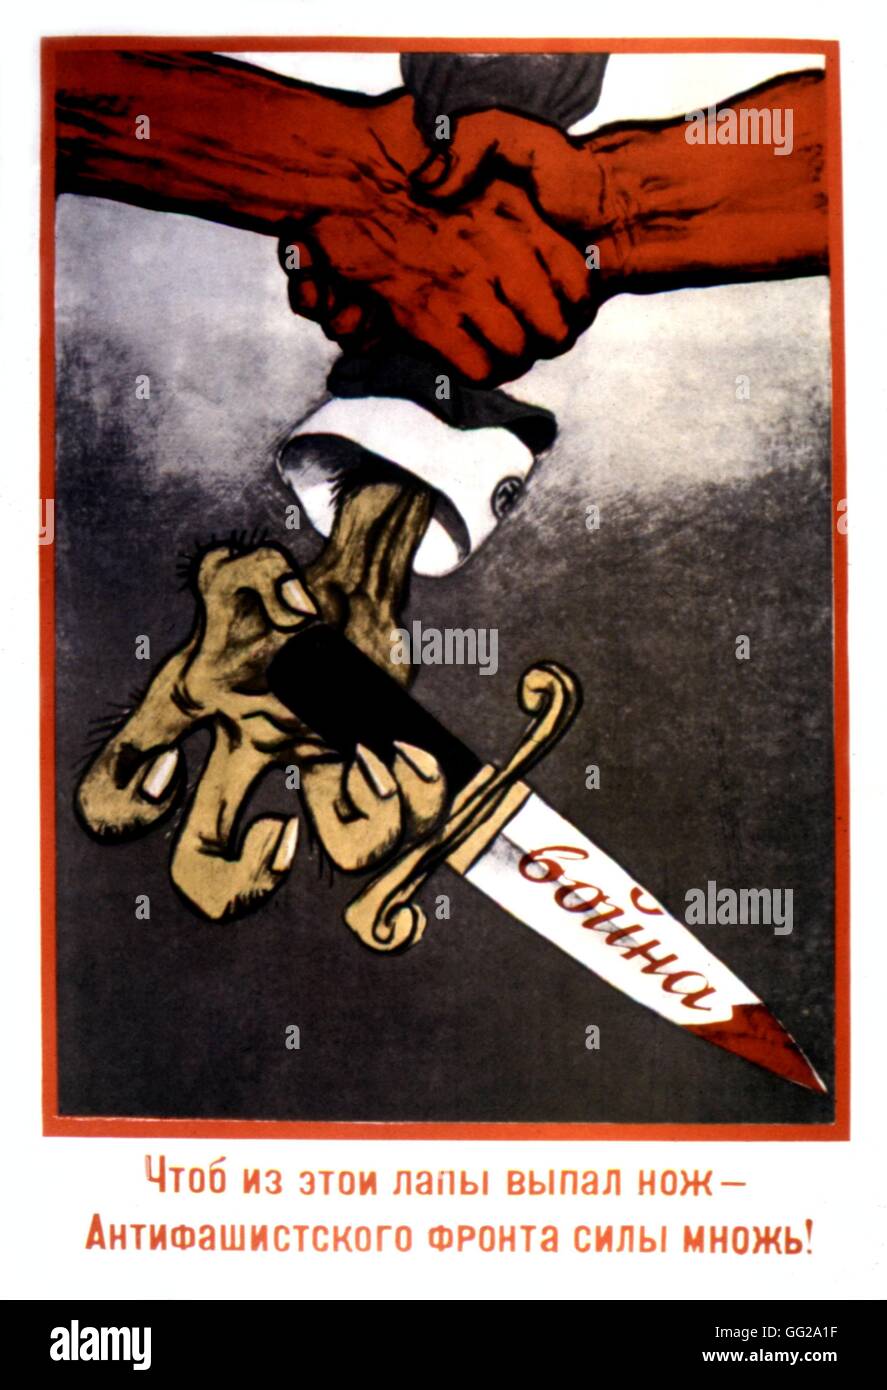 Propagandaplakat von M. Tcheremnykh. "Erhöhen Sie die Kräfte der antifaschistischen Front, so dass diese Hand des Messers loslässt!" 1938-UDSSR Stockfoto